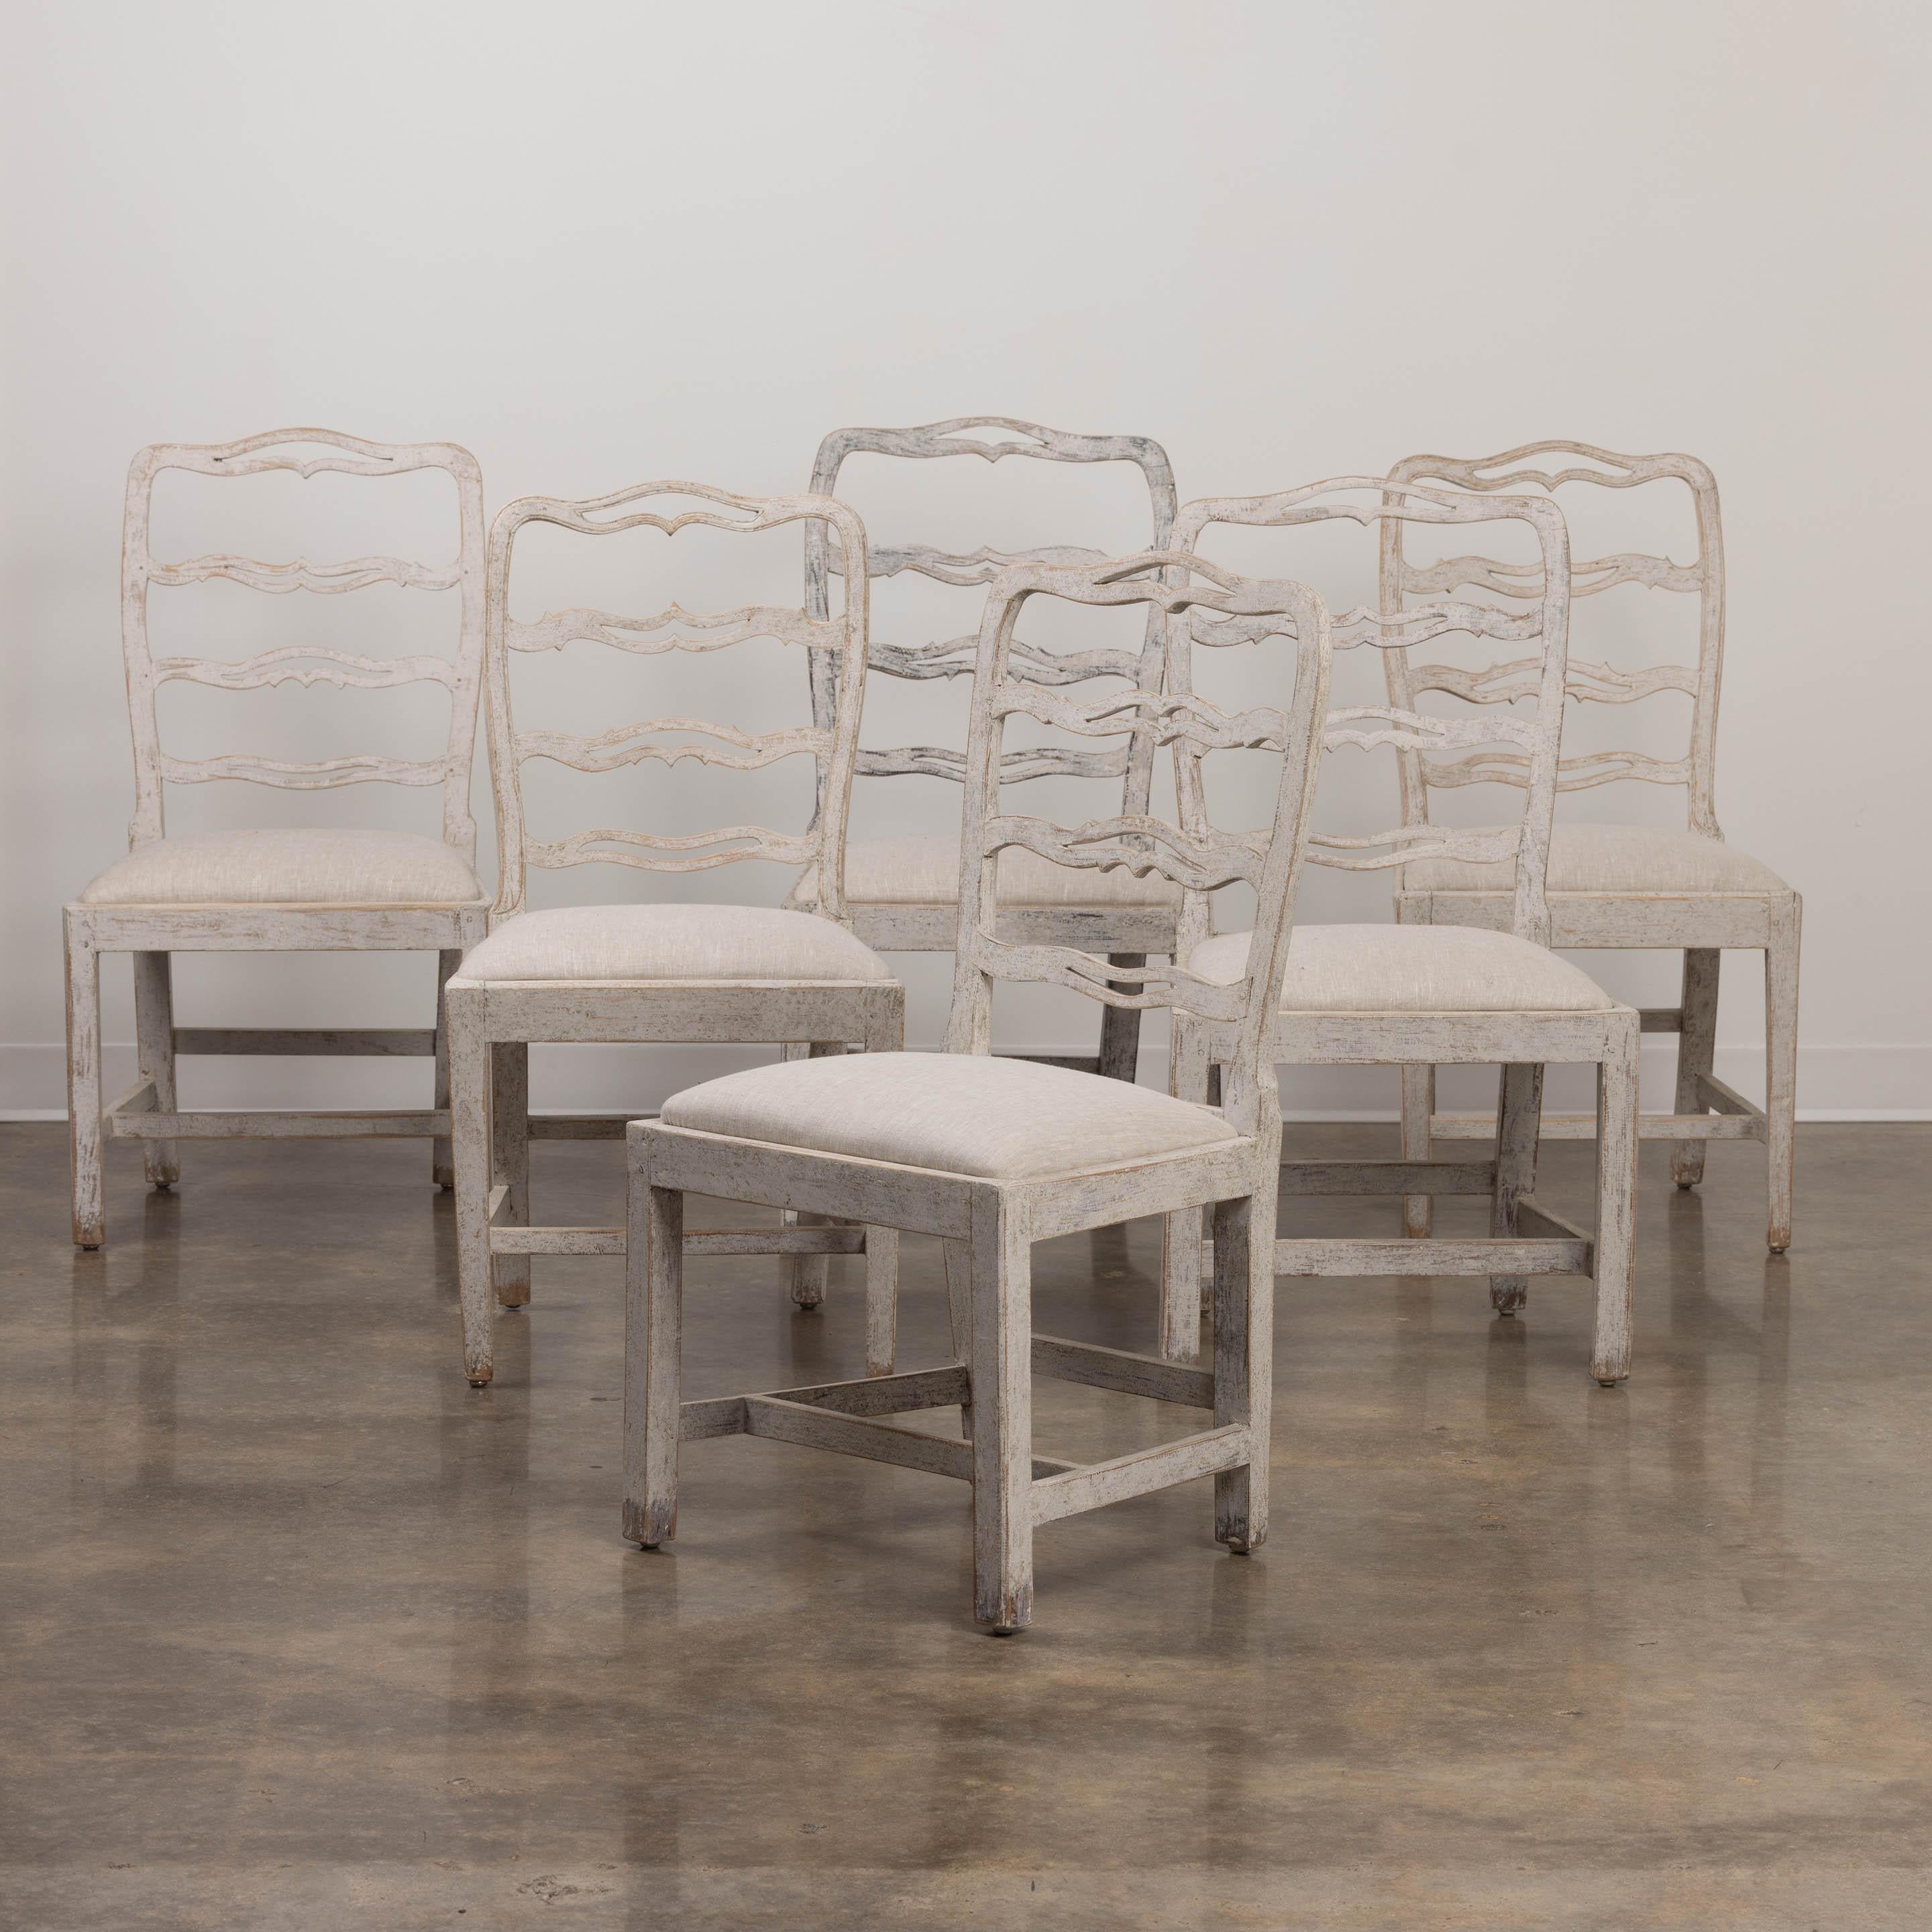 Ein zusammengehöriger Satz von 5 schwedischen, bemalten Esszimmerstühlen aus dem 19. Jahrhundert, neu mit Leinen bezogen, mit geschnitzten und durchbrochenen Leiterlehnen und Schlupfsitzen. Dies ist ein exquisiter Satz von Stühlen.
Der